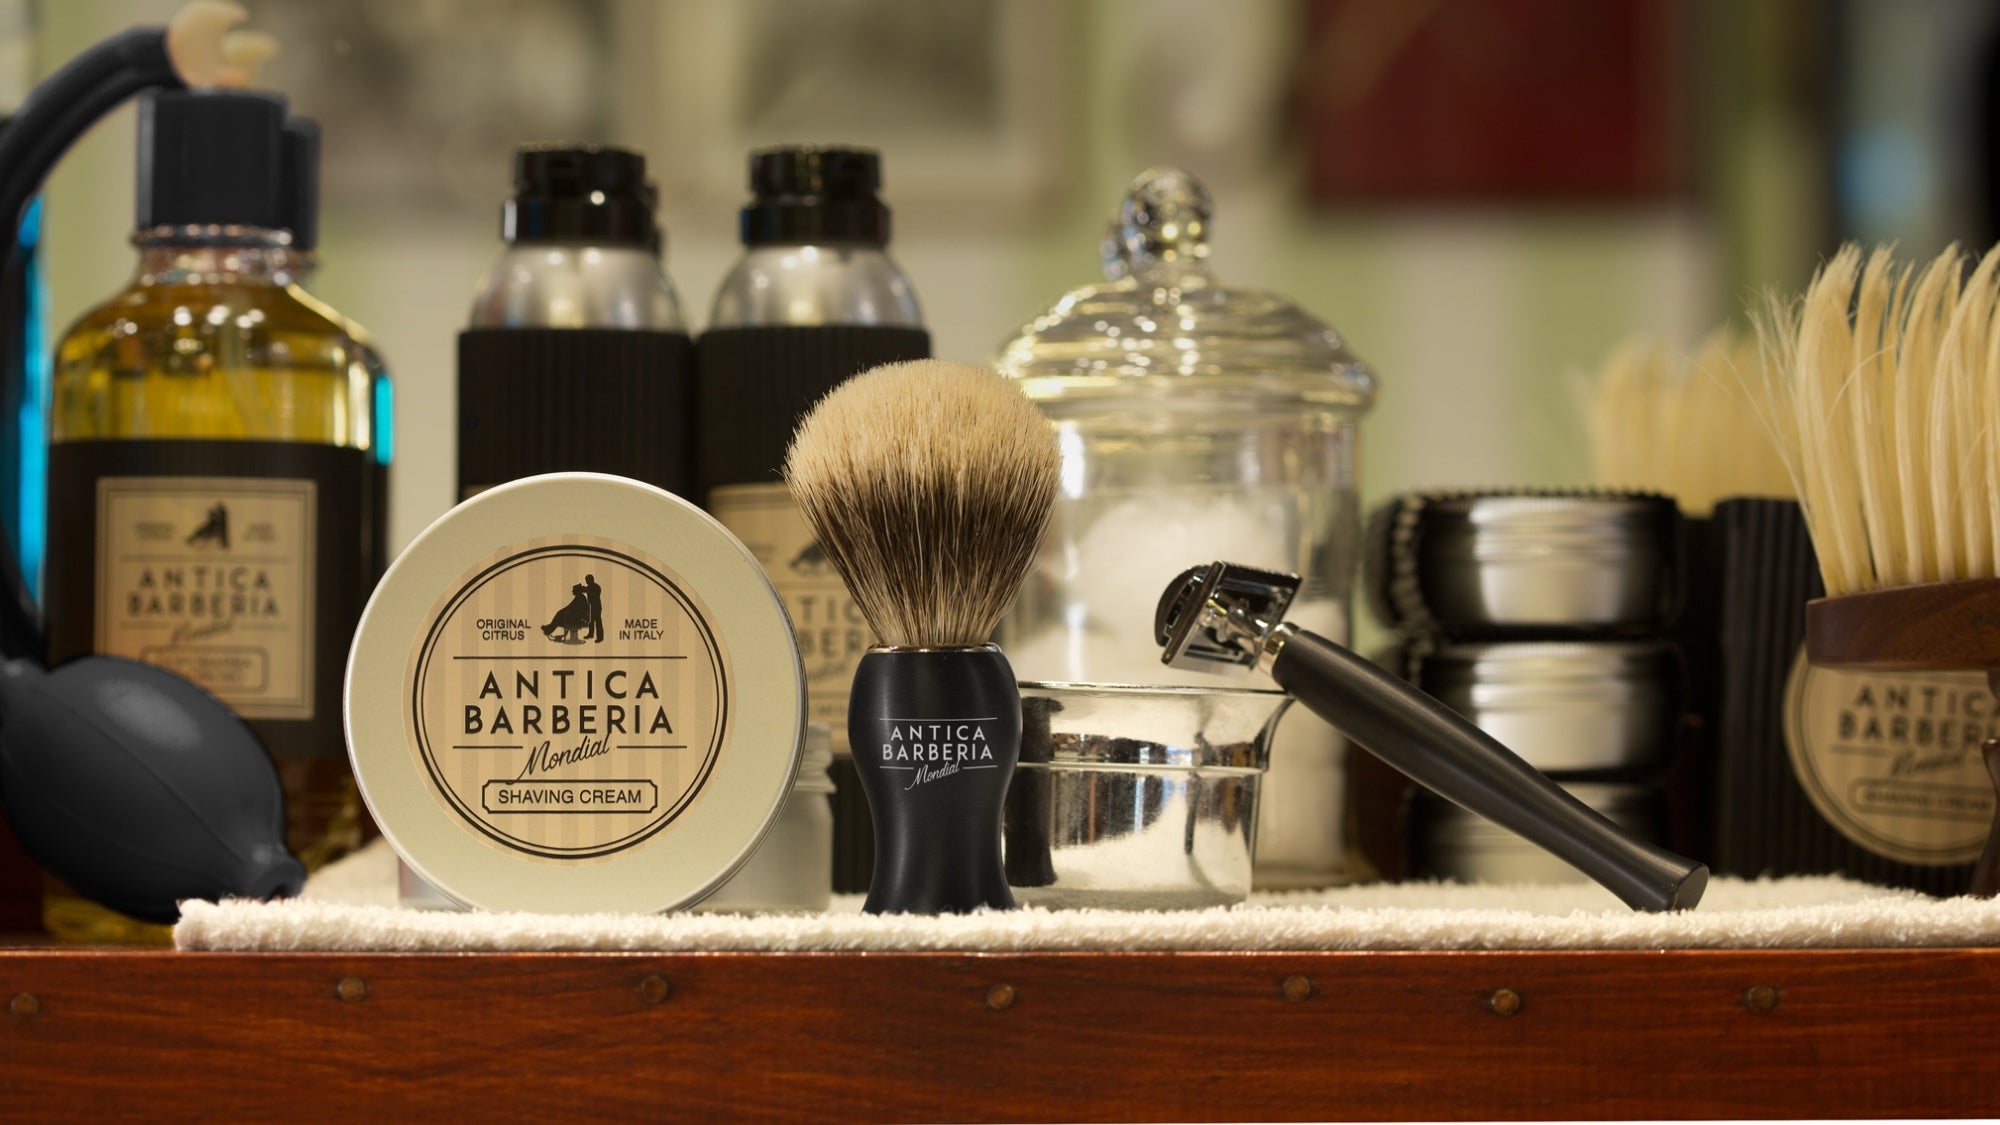 Antica Barberia Mondial Shaving Creams – Mondial 1908 Shaving EU